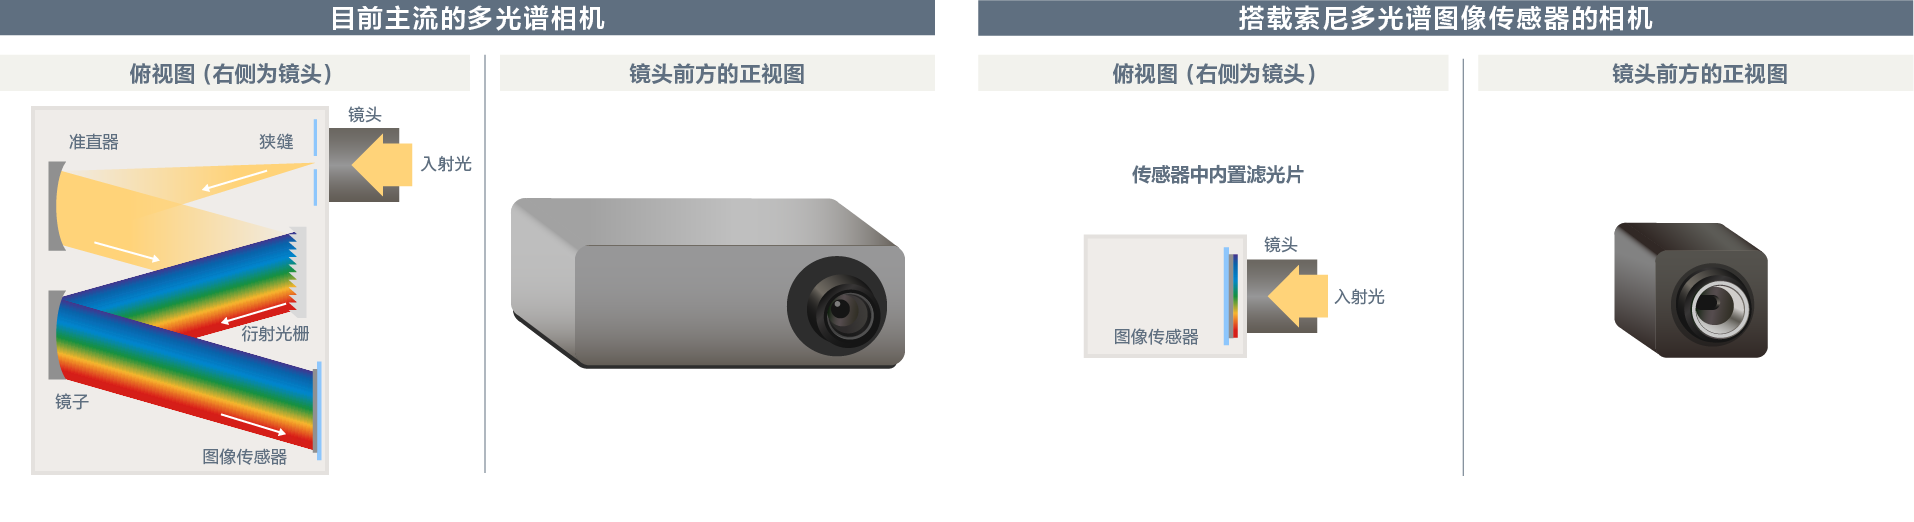 目前主流的多光谱相机与搭载索尼多光谱图像传感器的相机的比较图